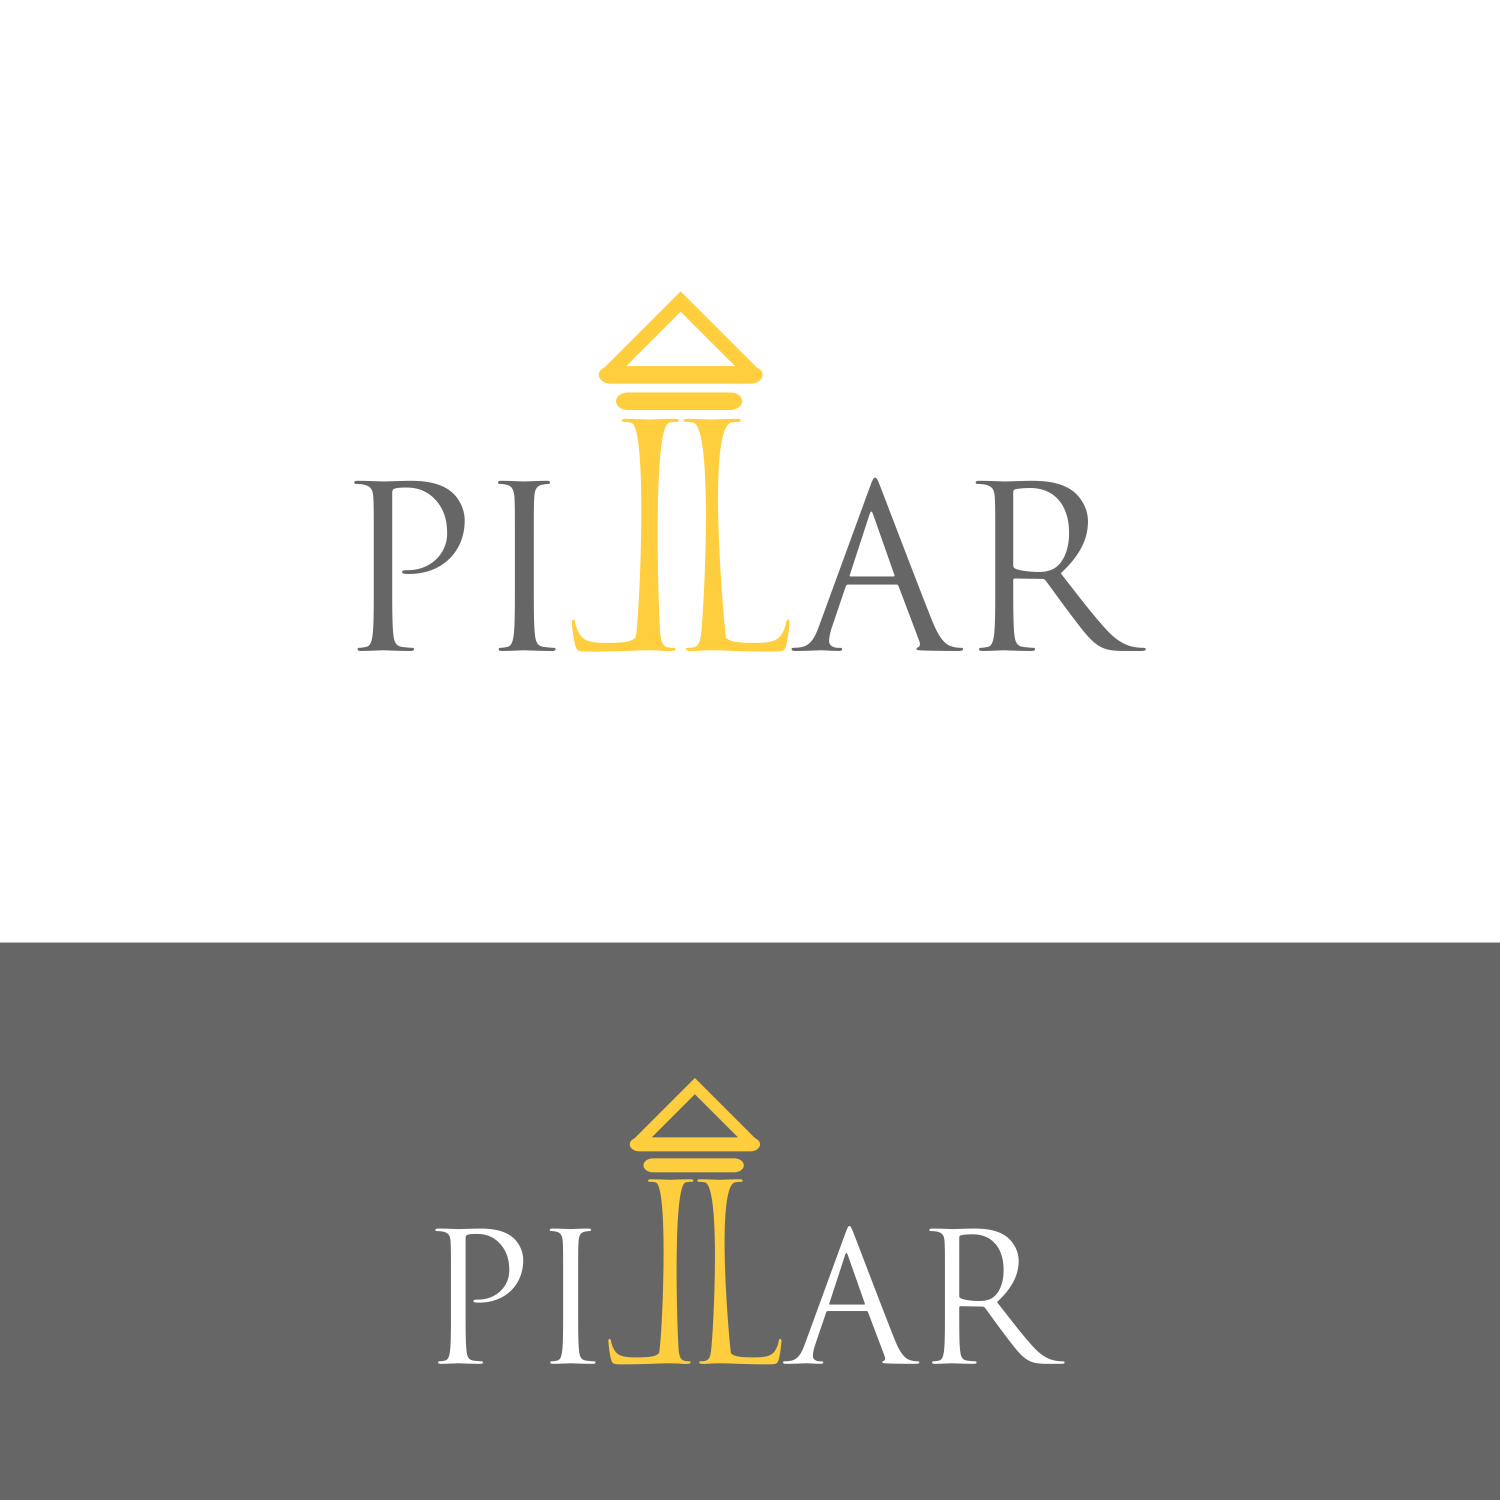 Pillar Logo - Bold, Modern, Architecture Logo Design for PILLAR